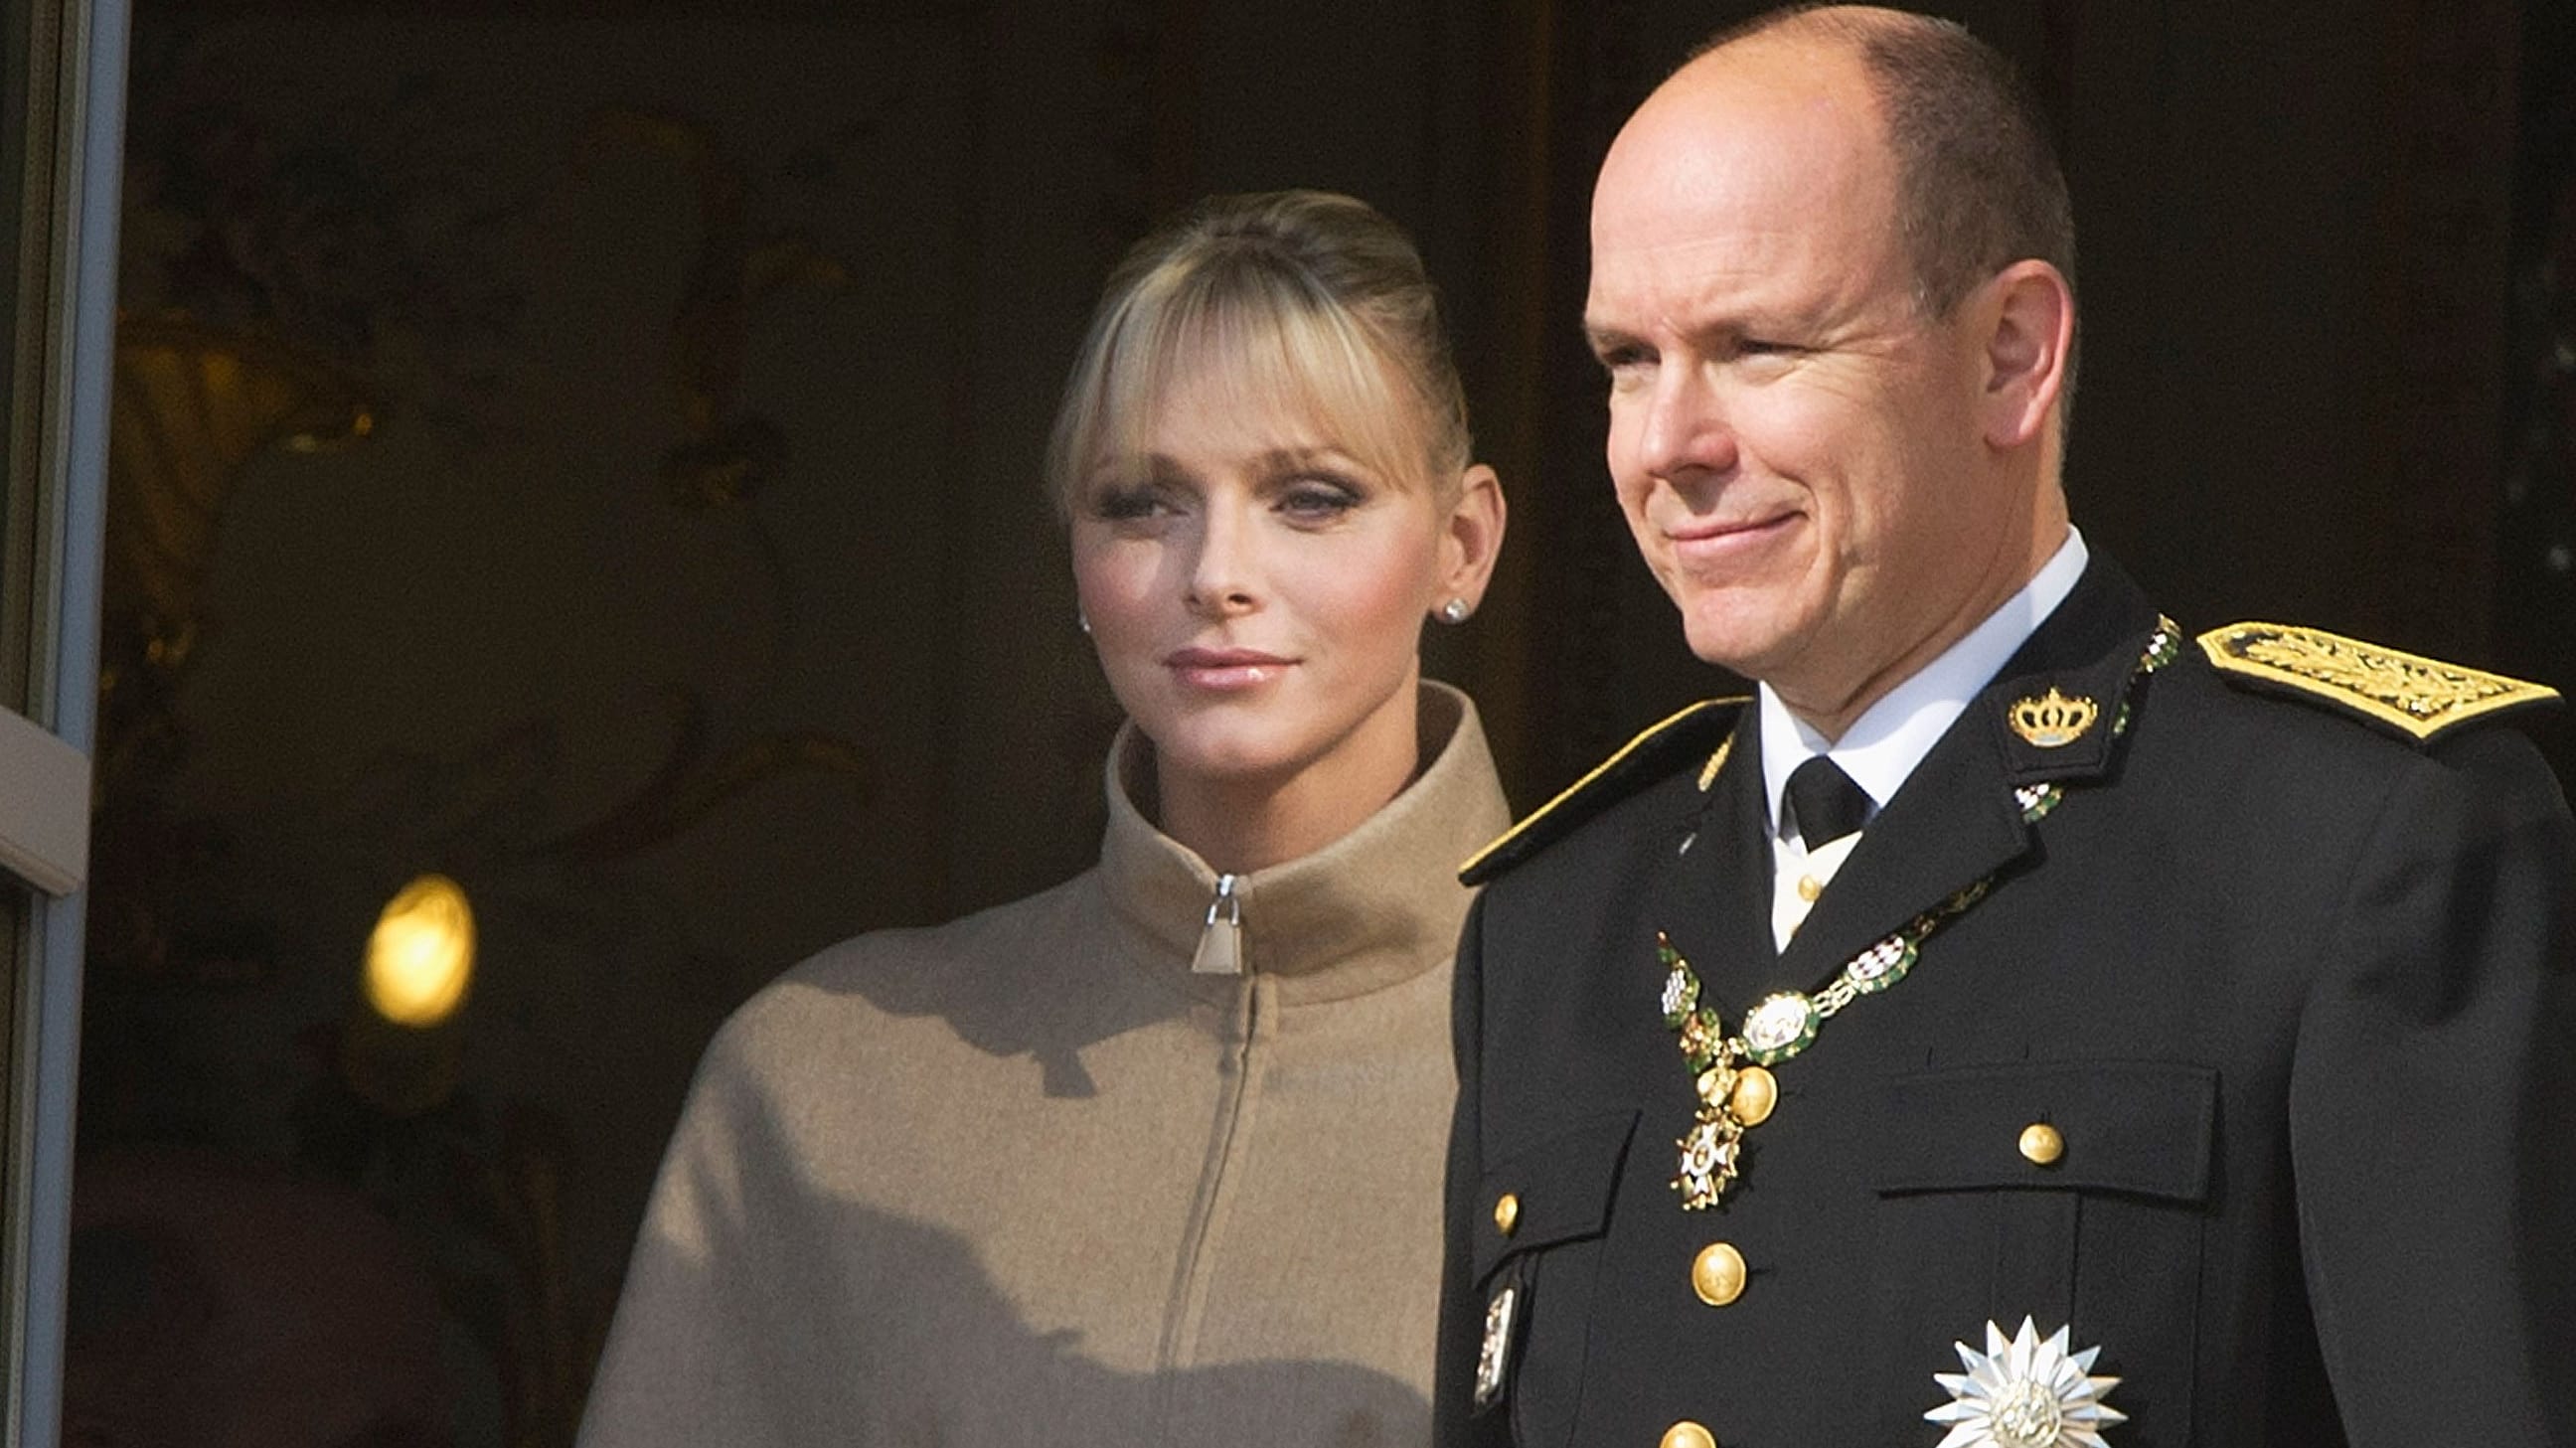 Fürst Albert II.: Monaco-Royals unter Druck – jetzt geht es um 